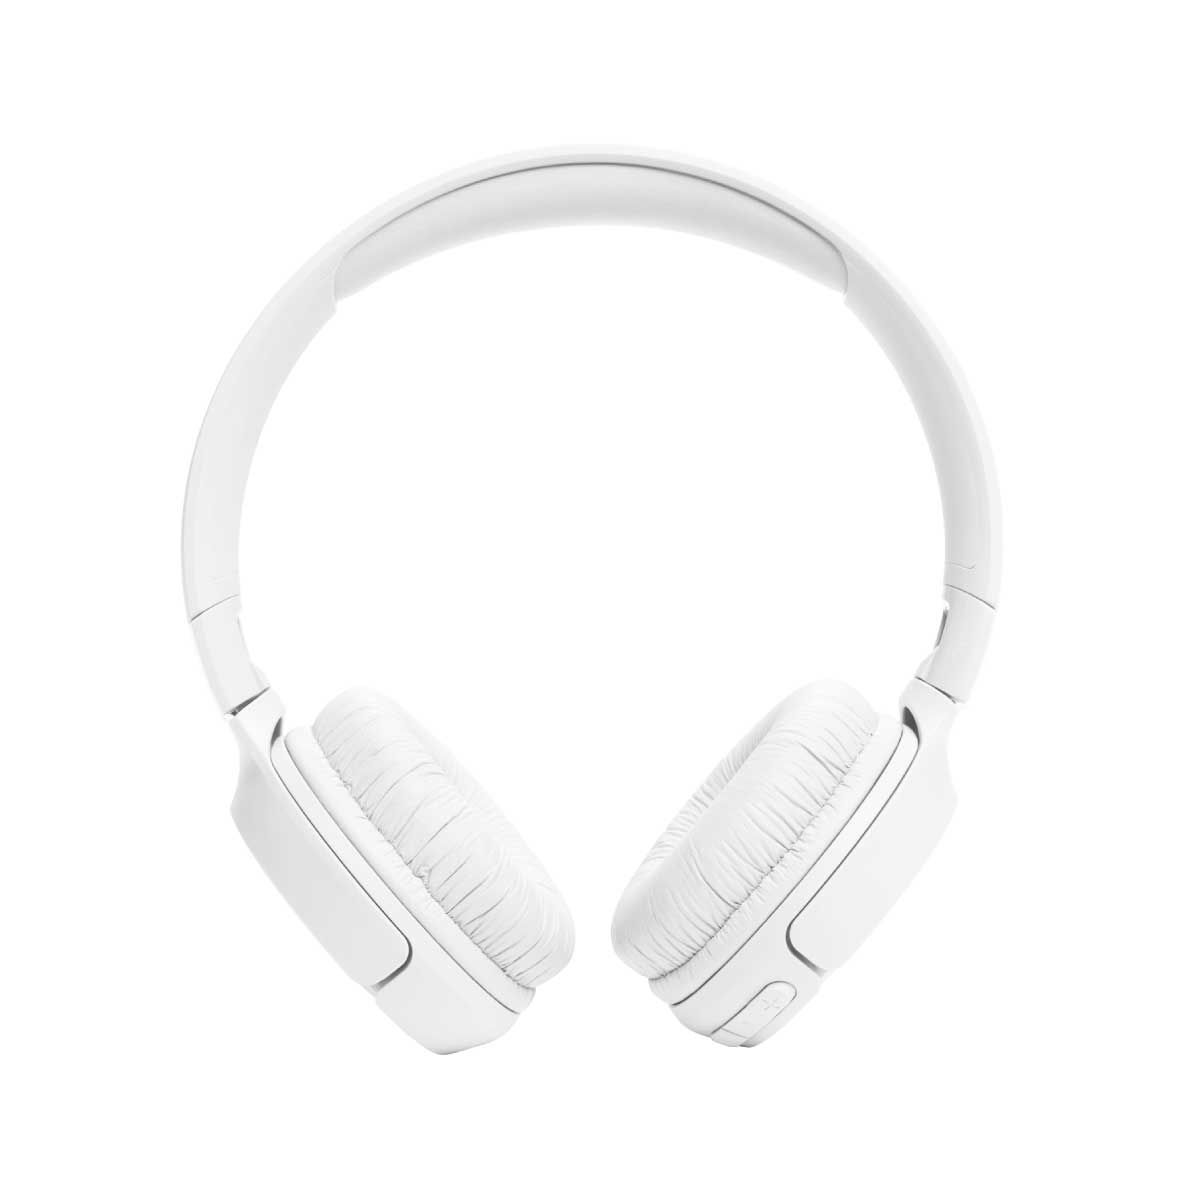 หูฟัง JBL Tune รุ่น TUN520BTWH WHITE สีขาว